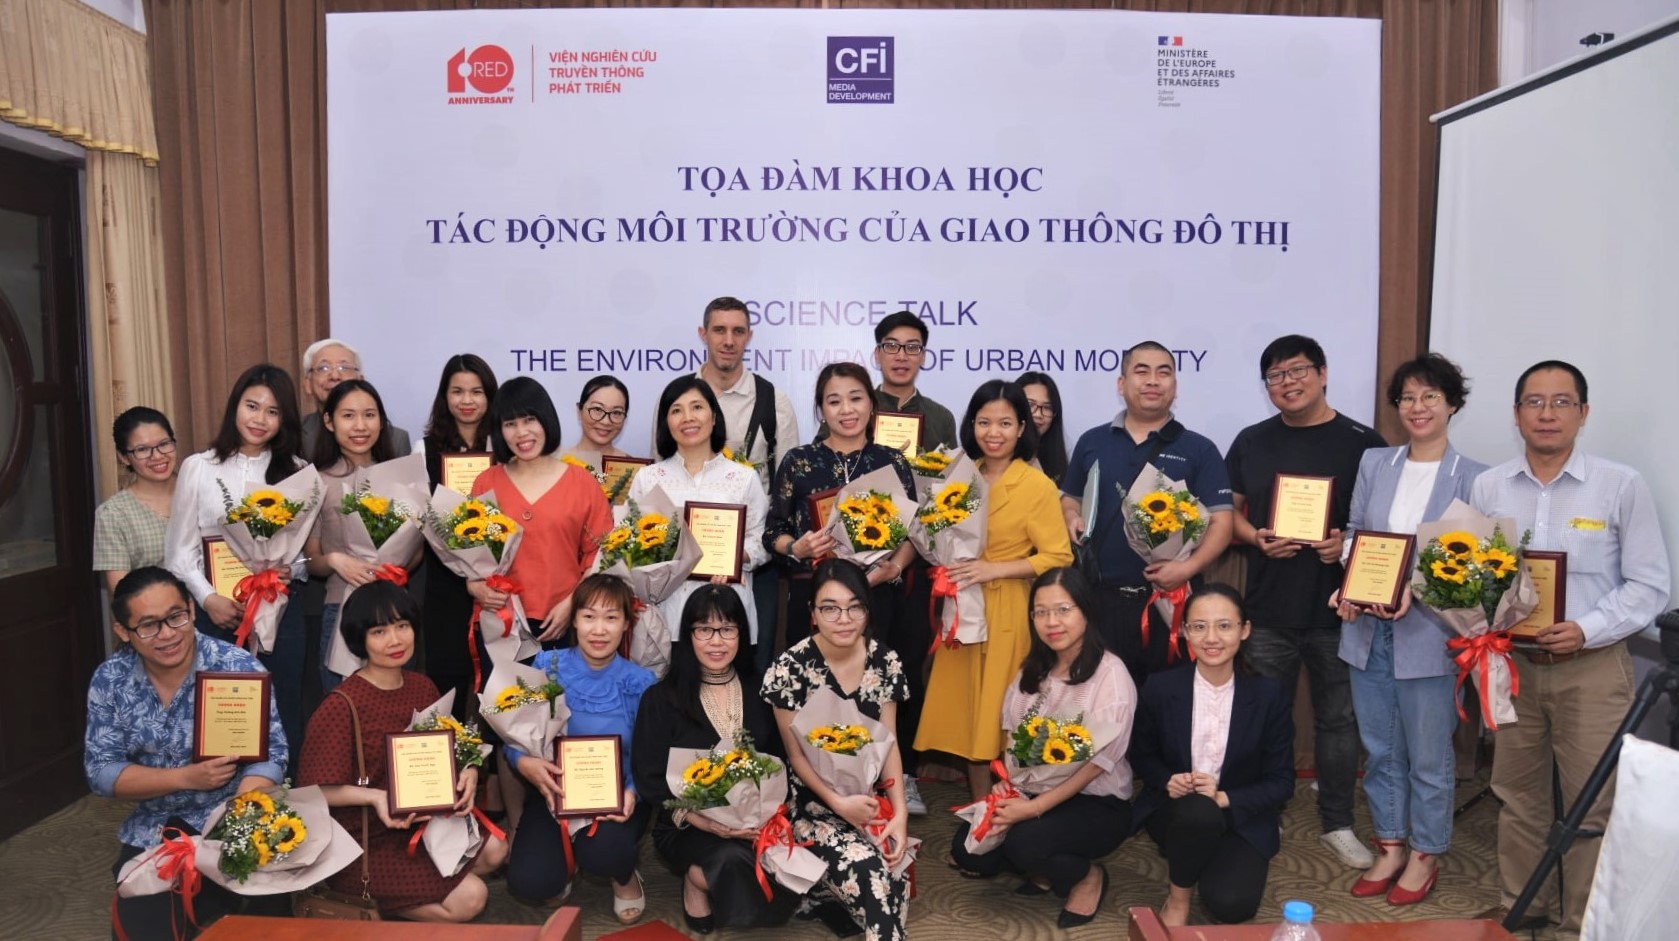 Tổng kết và trao giấy chứng nhận tham gia chuỗi tọa đàm khoa học cho phóng viên tại Hà Nội ngày 30/3/2021| Nguồn: RED